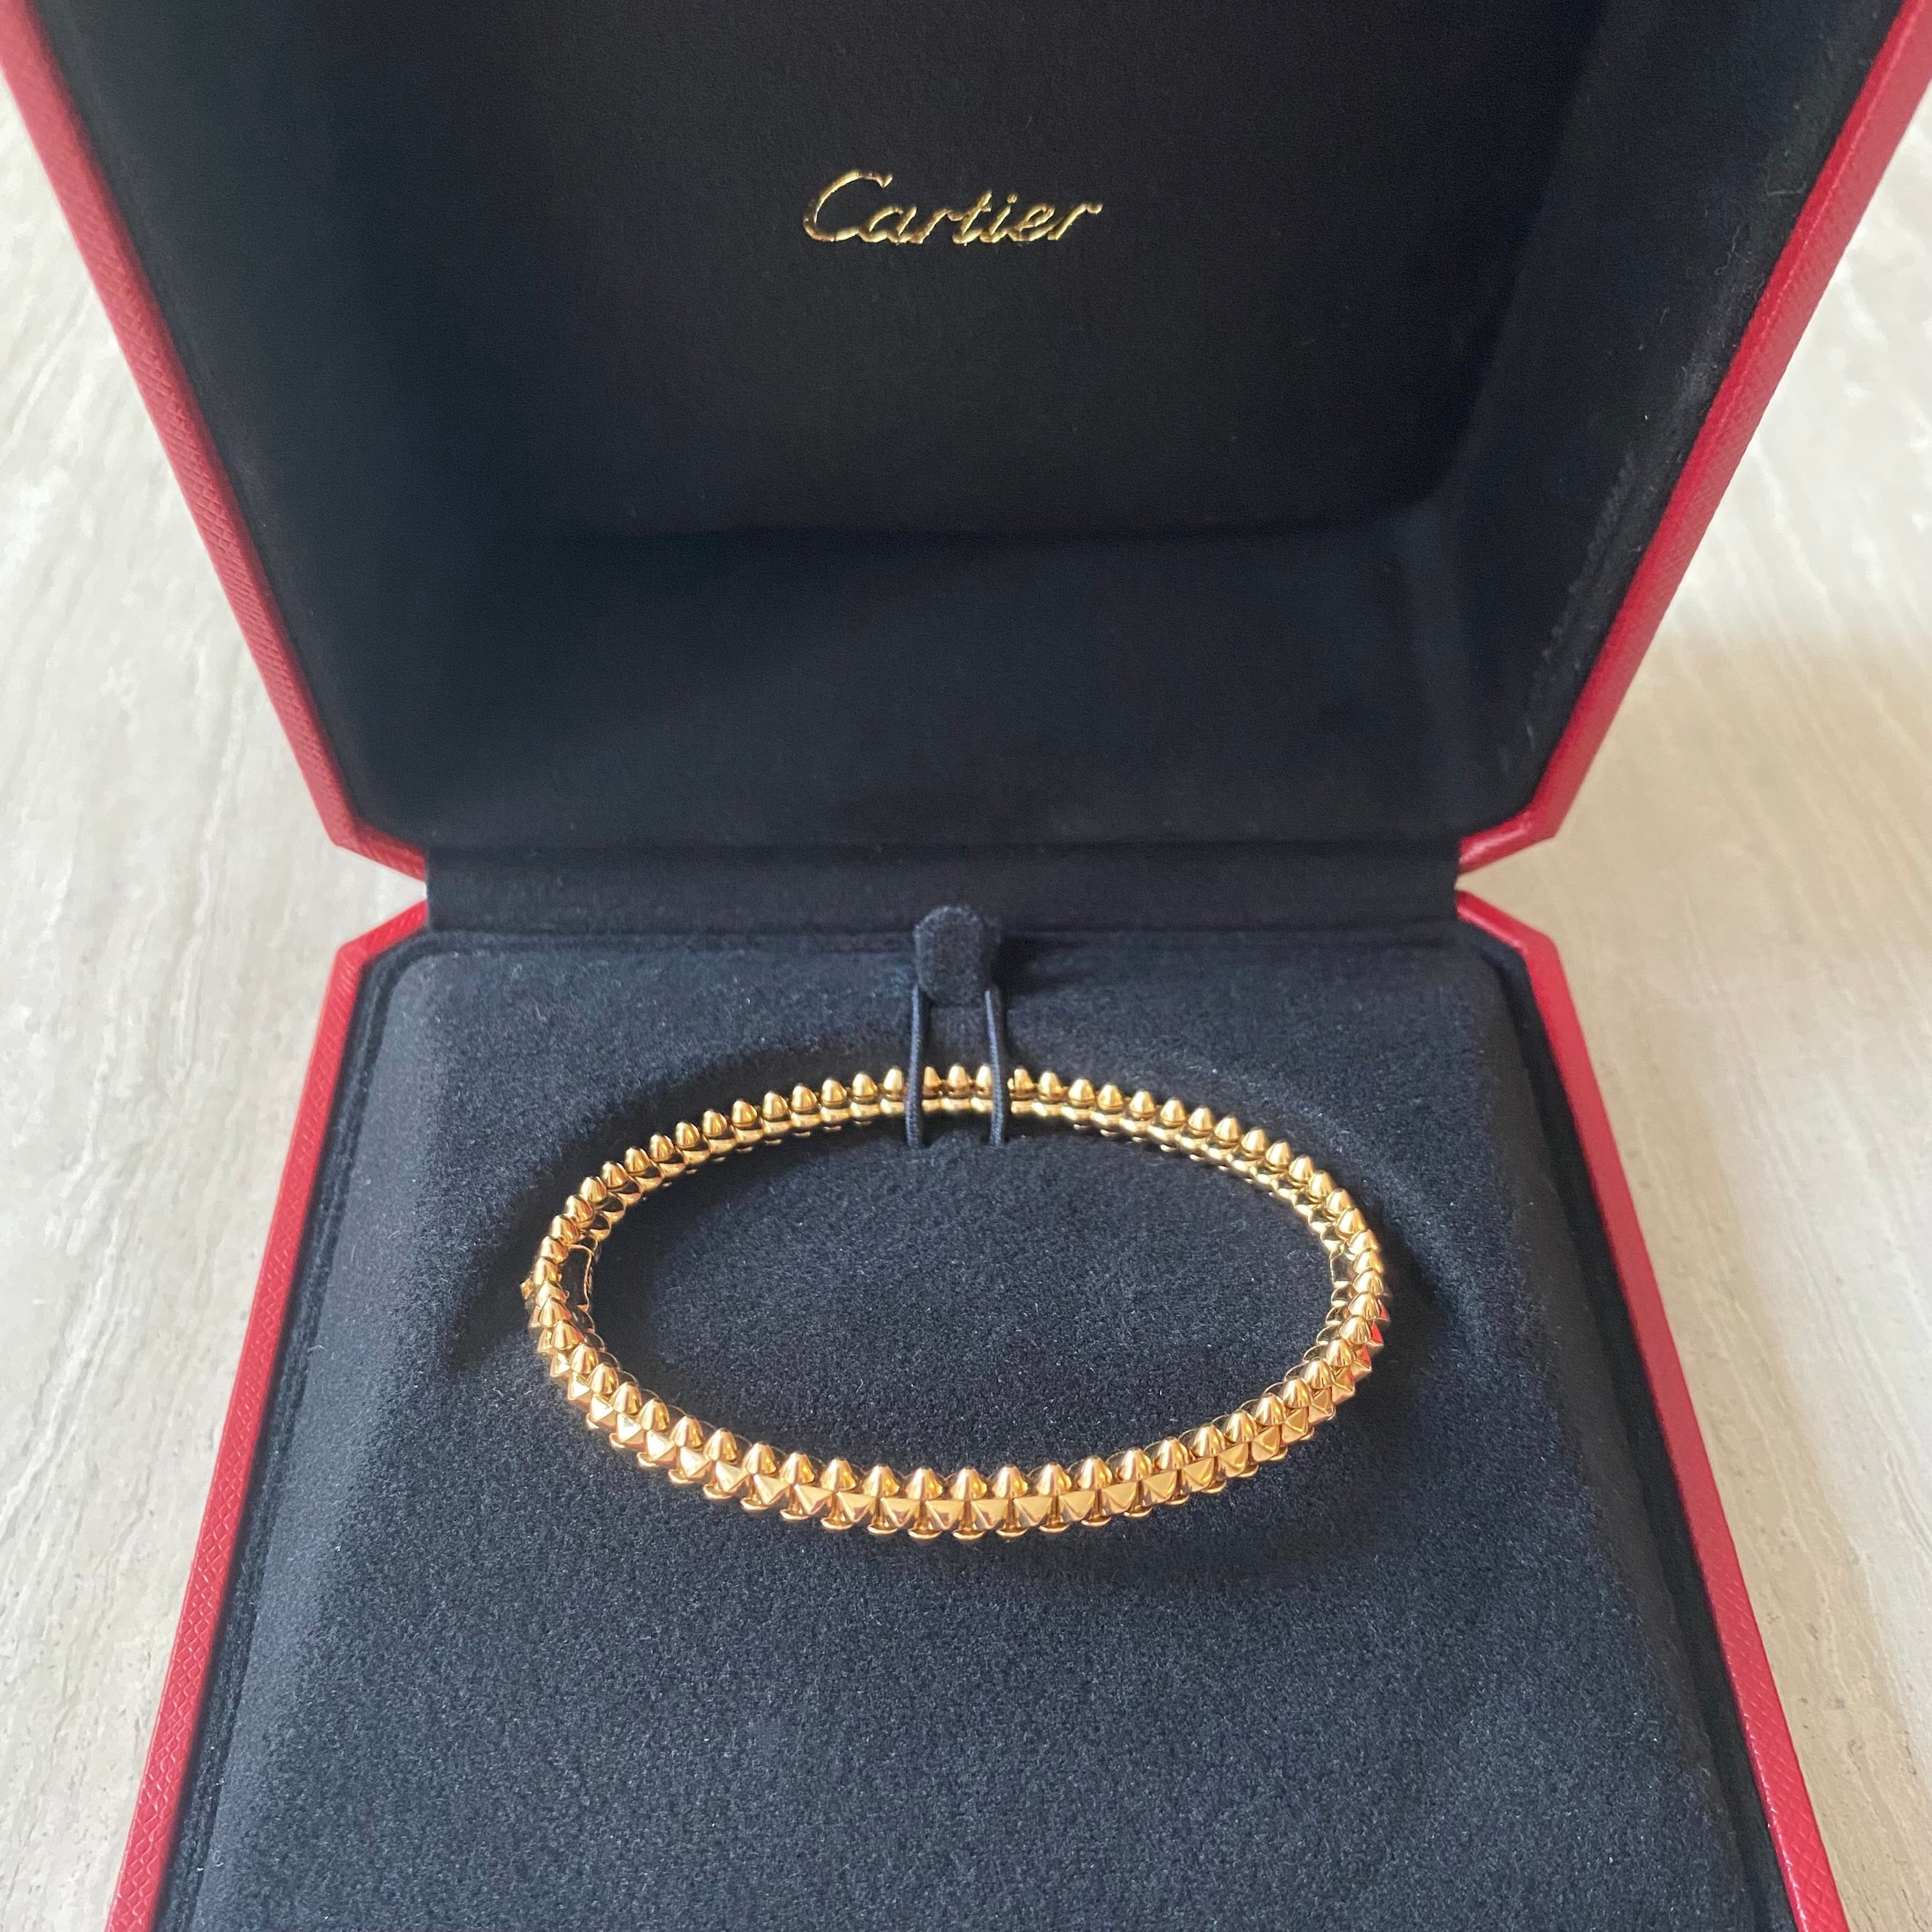 CRN6715017 - Clash de Cartier bracelet Diamonds - Pink gold